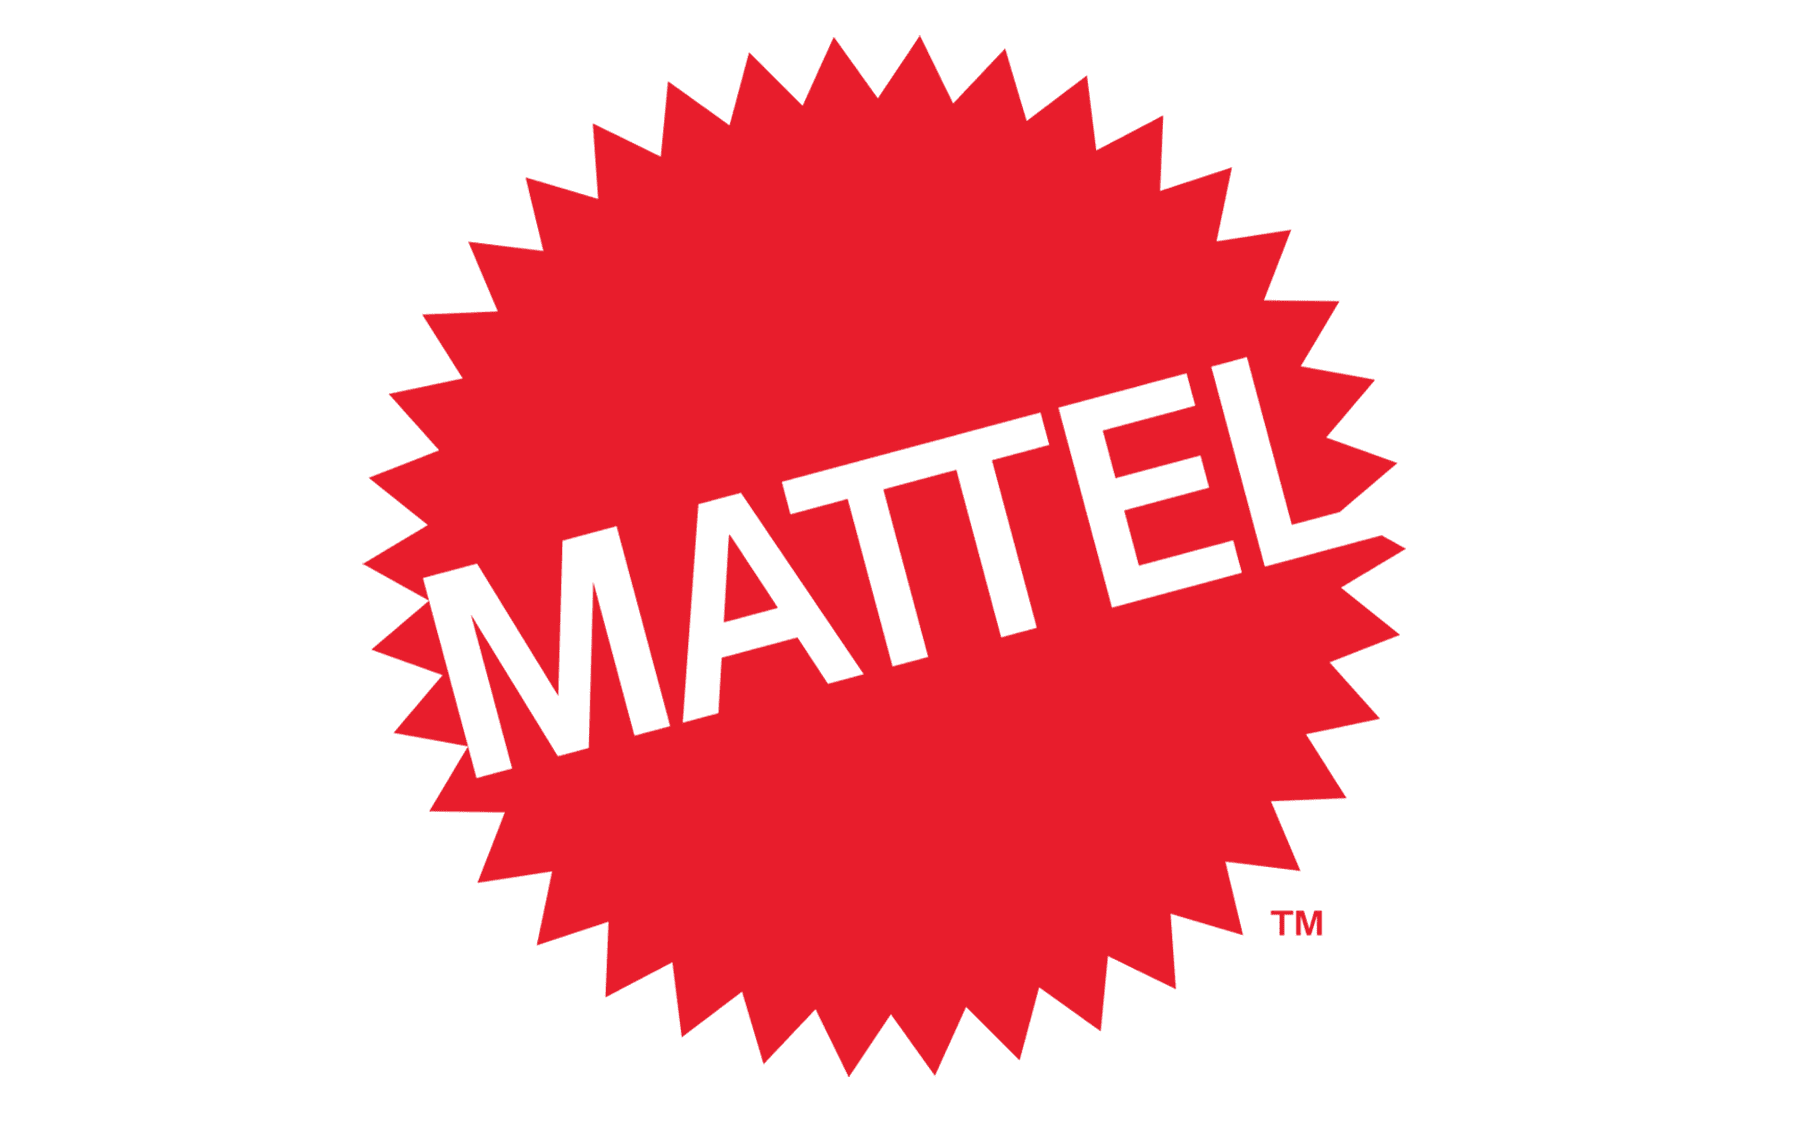 Mattel-Logo